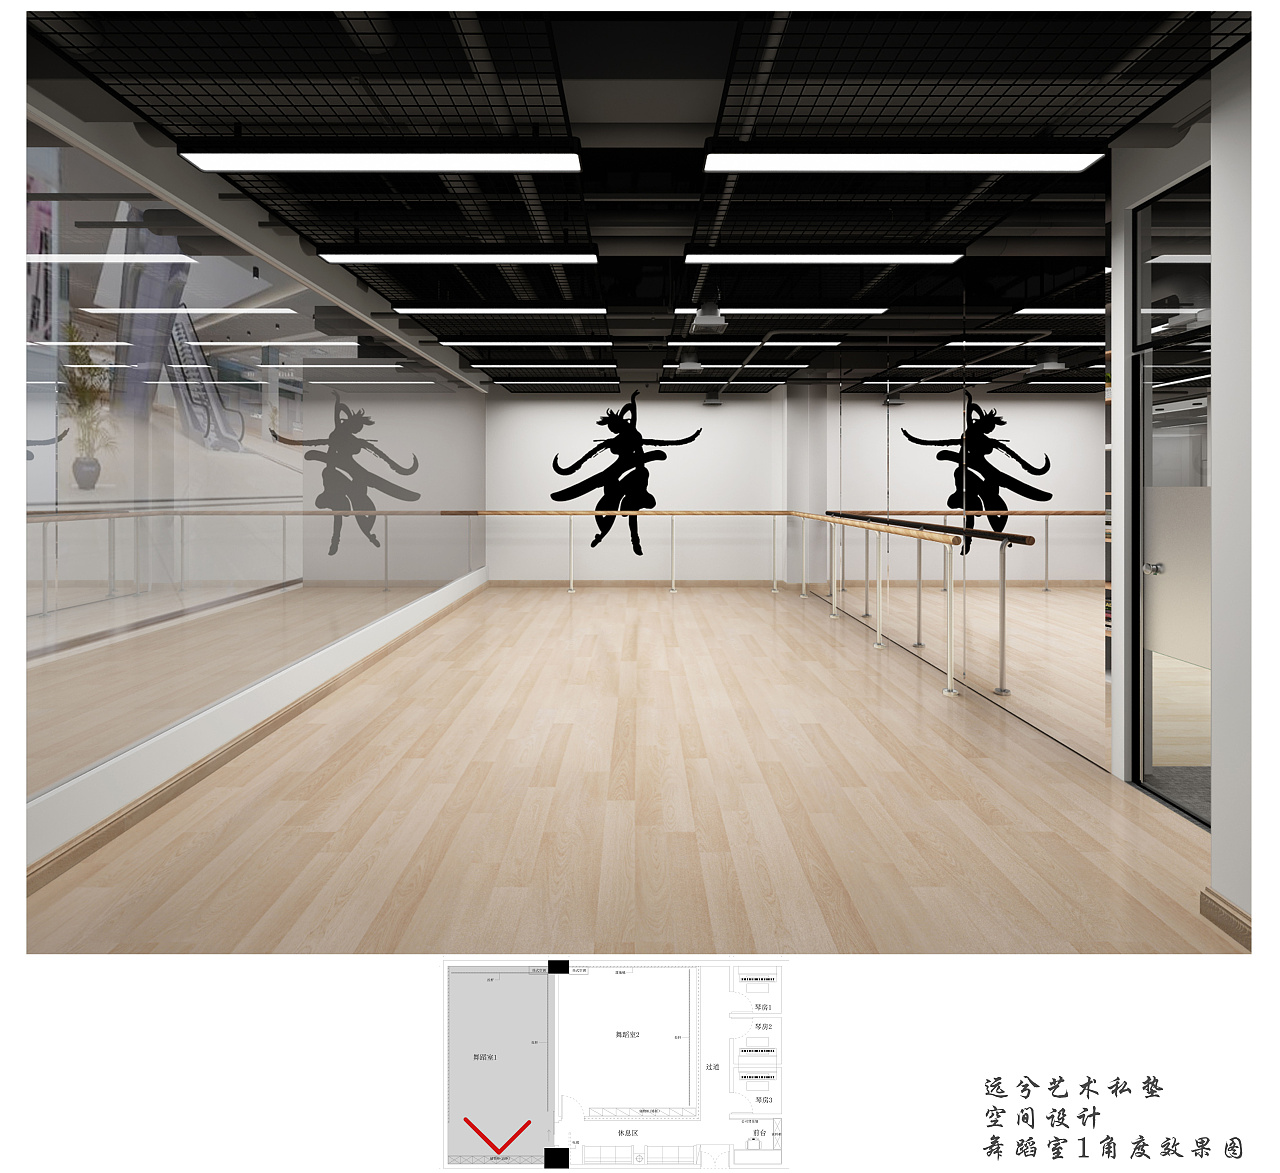 史上最全舞蹈室设计方案 2019舞蹈室装修图片分享 - 本地资讯 - 装一网